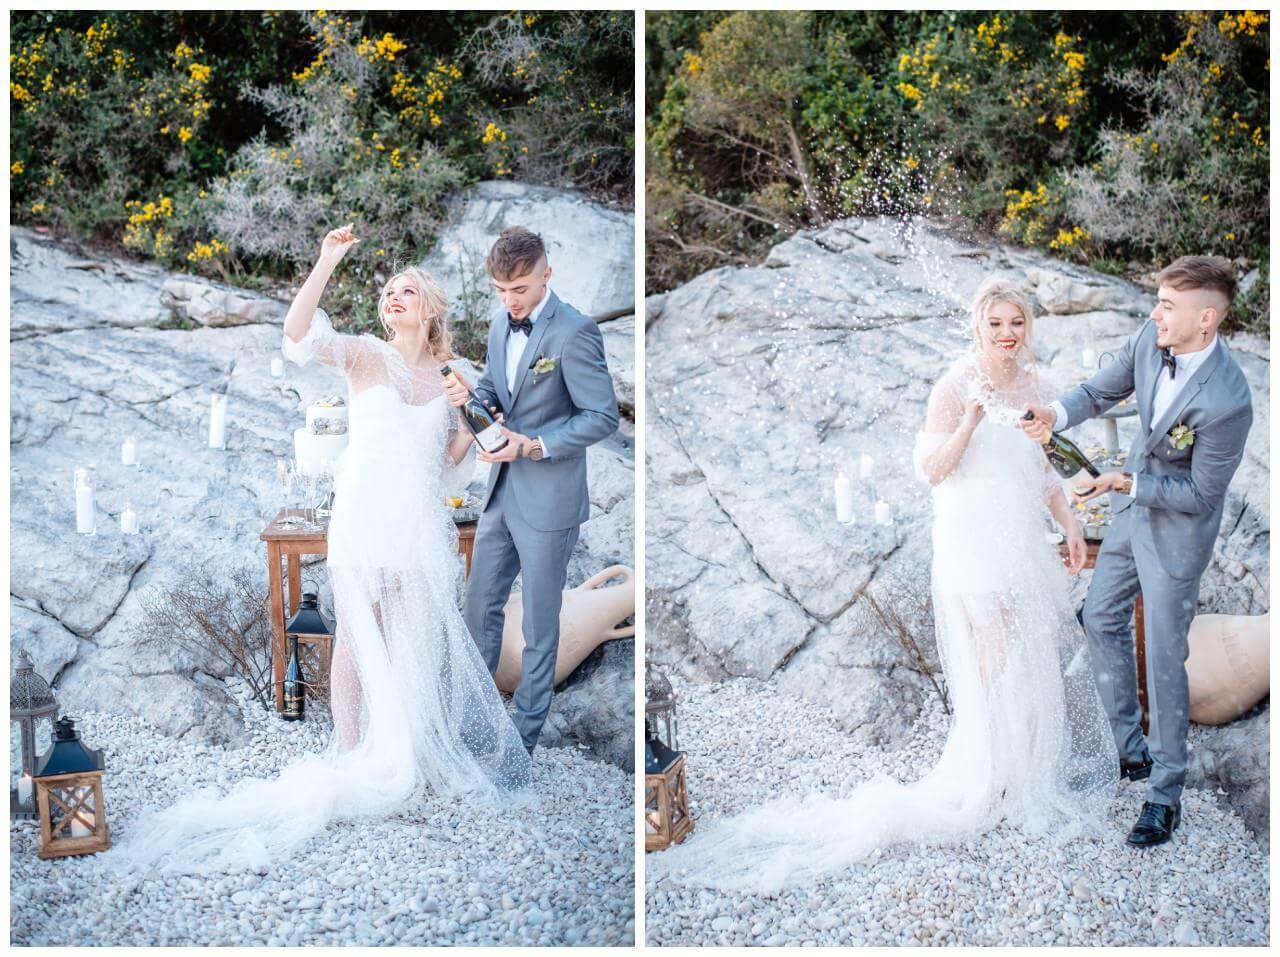 Hochzeit in Kroatien am Meer Paarshooting Brautkleid Wedding Kroatien, wedding in croatia,hochzeitsplanerin kroatien, hochzeit in kroatien